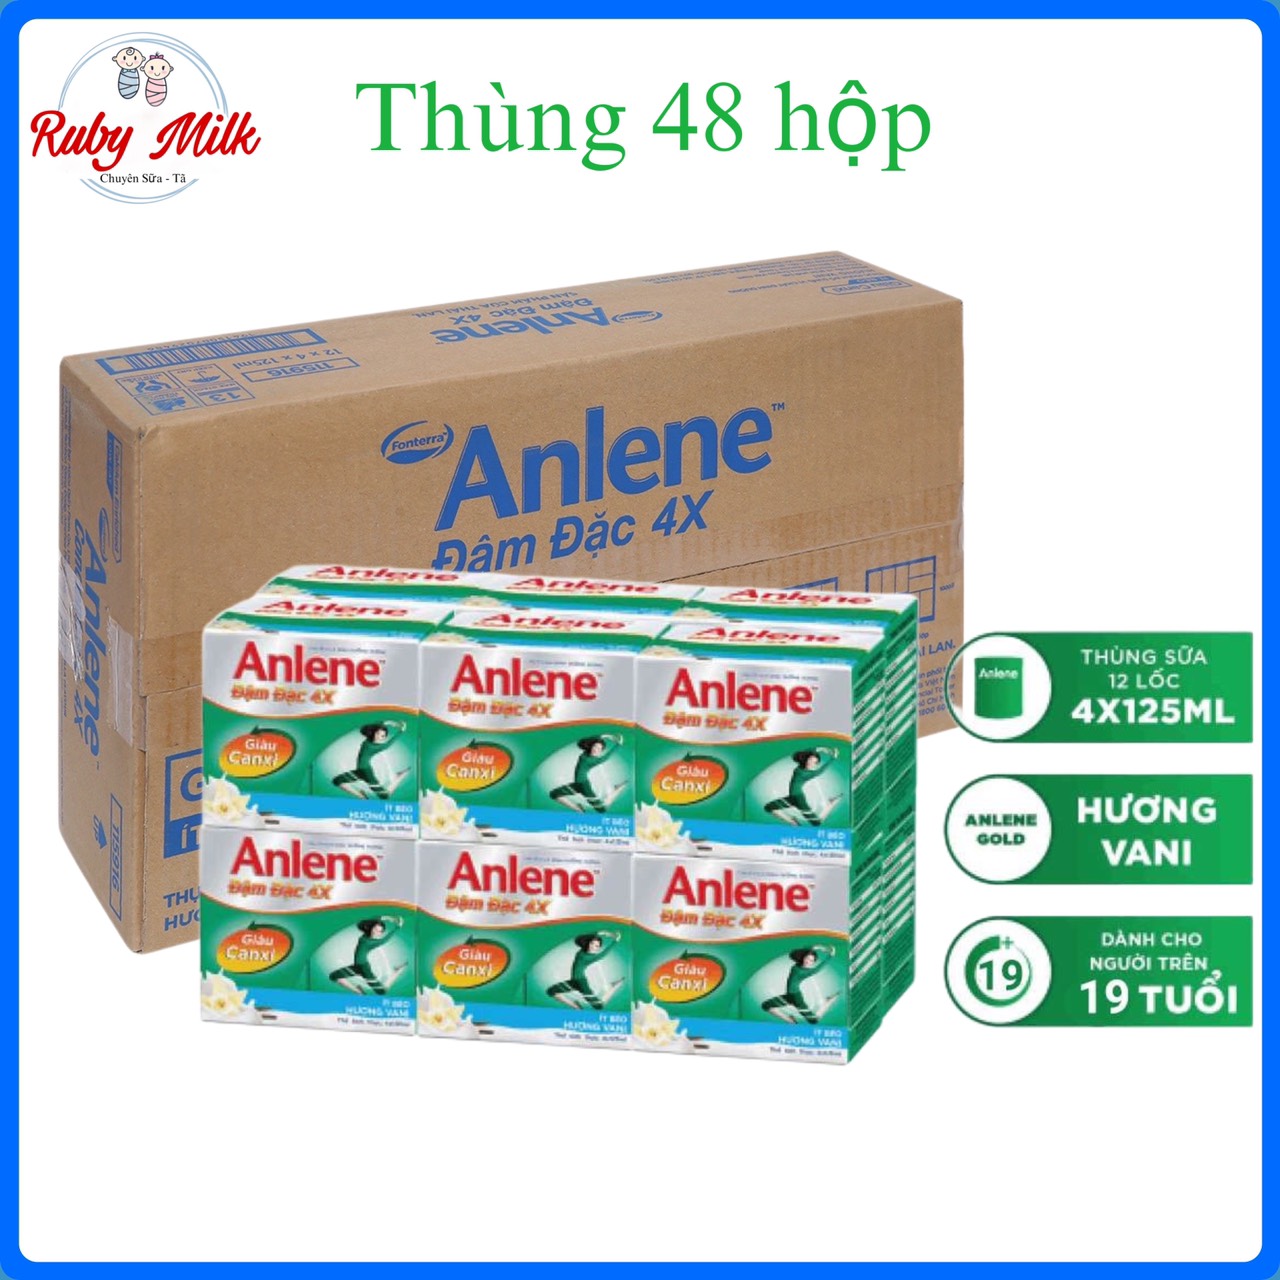 [Date 8.2024] Thùng 48 hộp sữa Anlene pha sẵn đậm đặc 4X vị Vani x 125ml